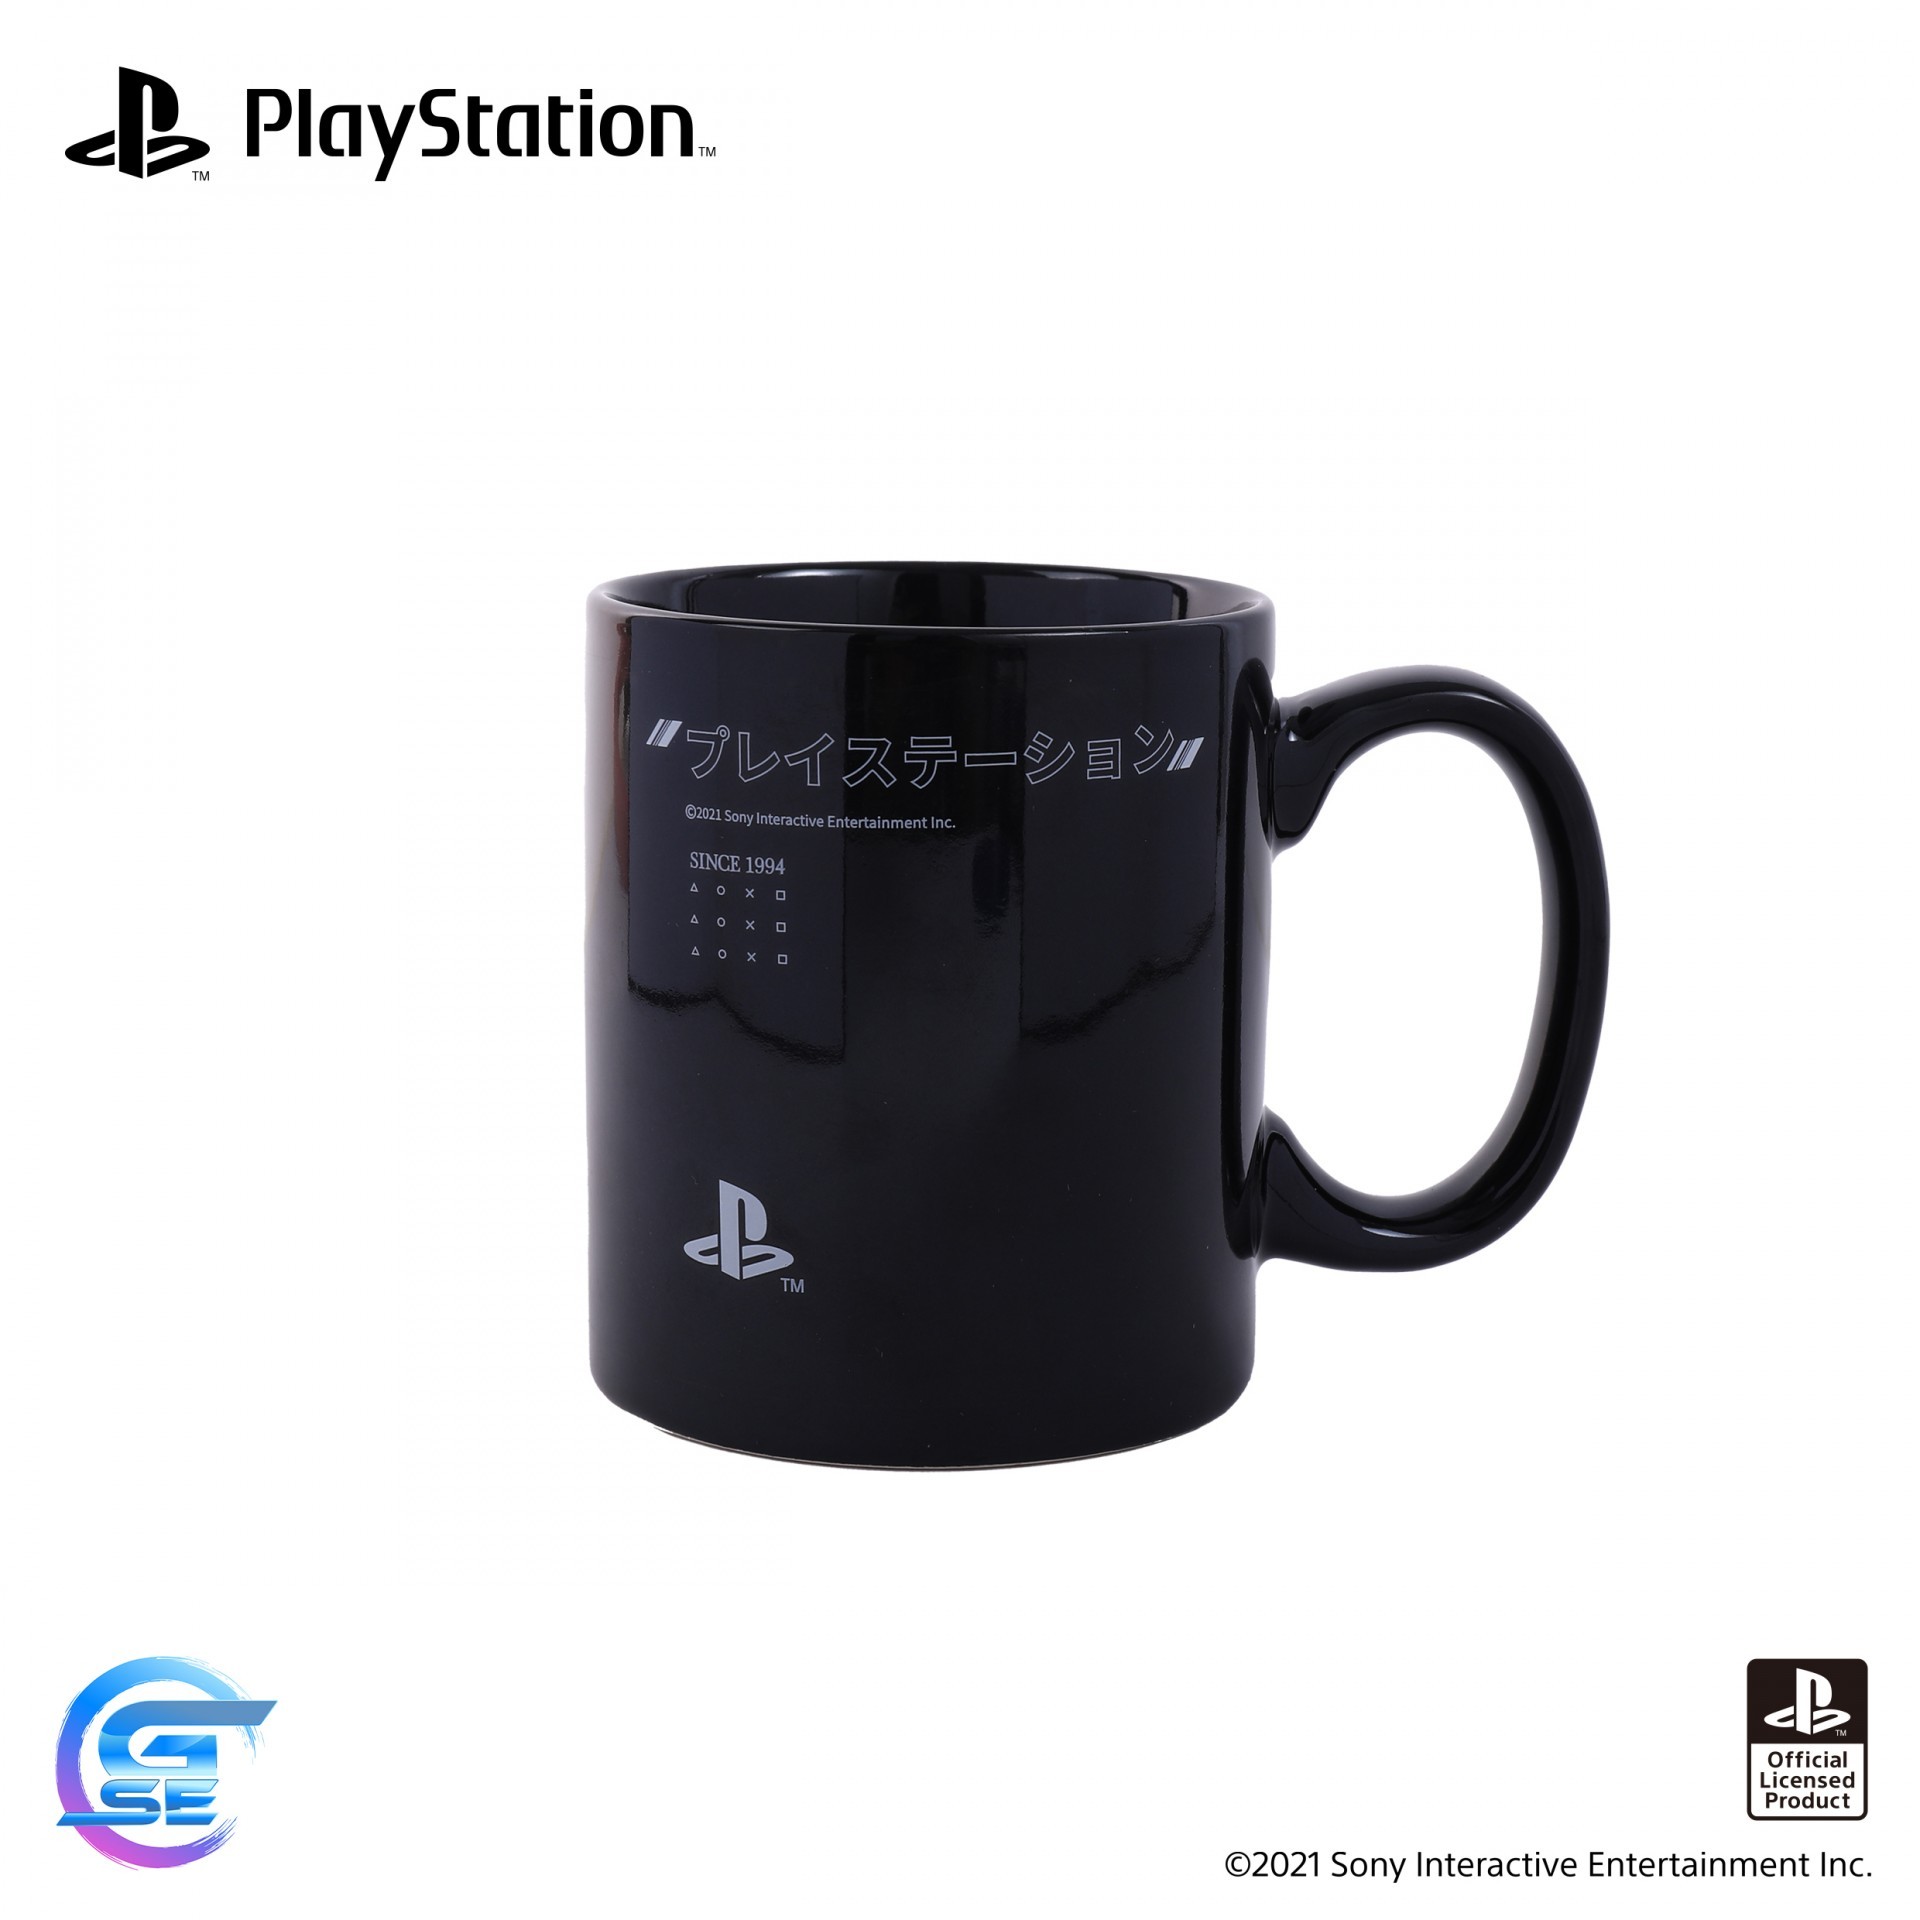 官方授權 PlayStation 主題周邊產品於台灣地區將延期出貨